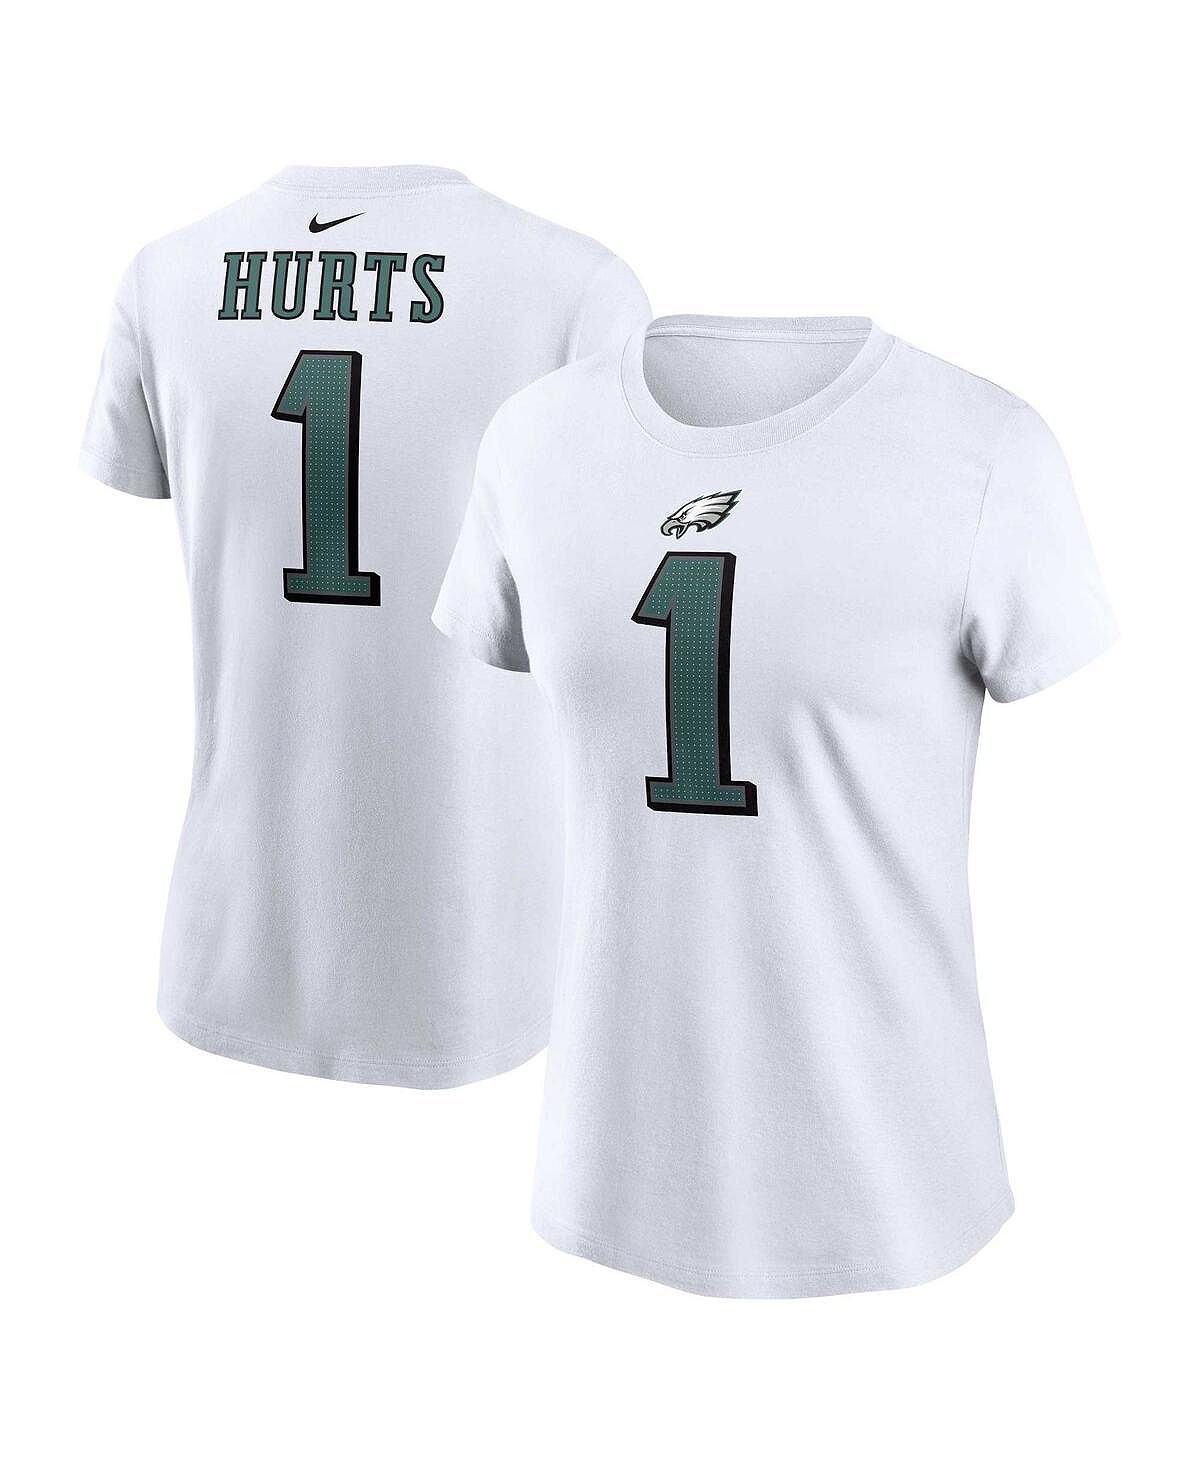 Женская белая футболка Jalen Hurts Philadelphia Eagles с именем и номером игрока Nike, белый